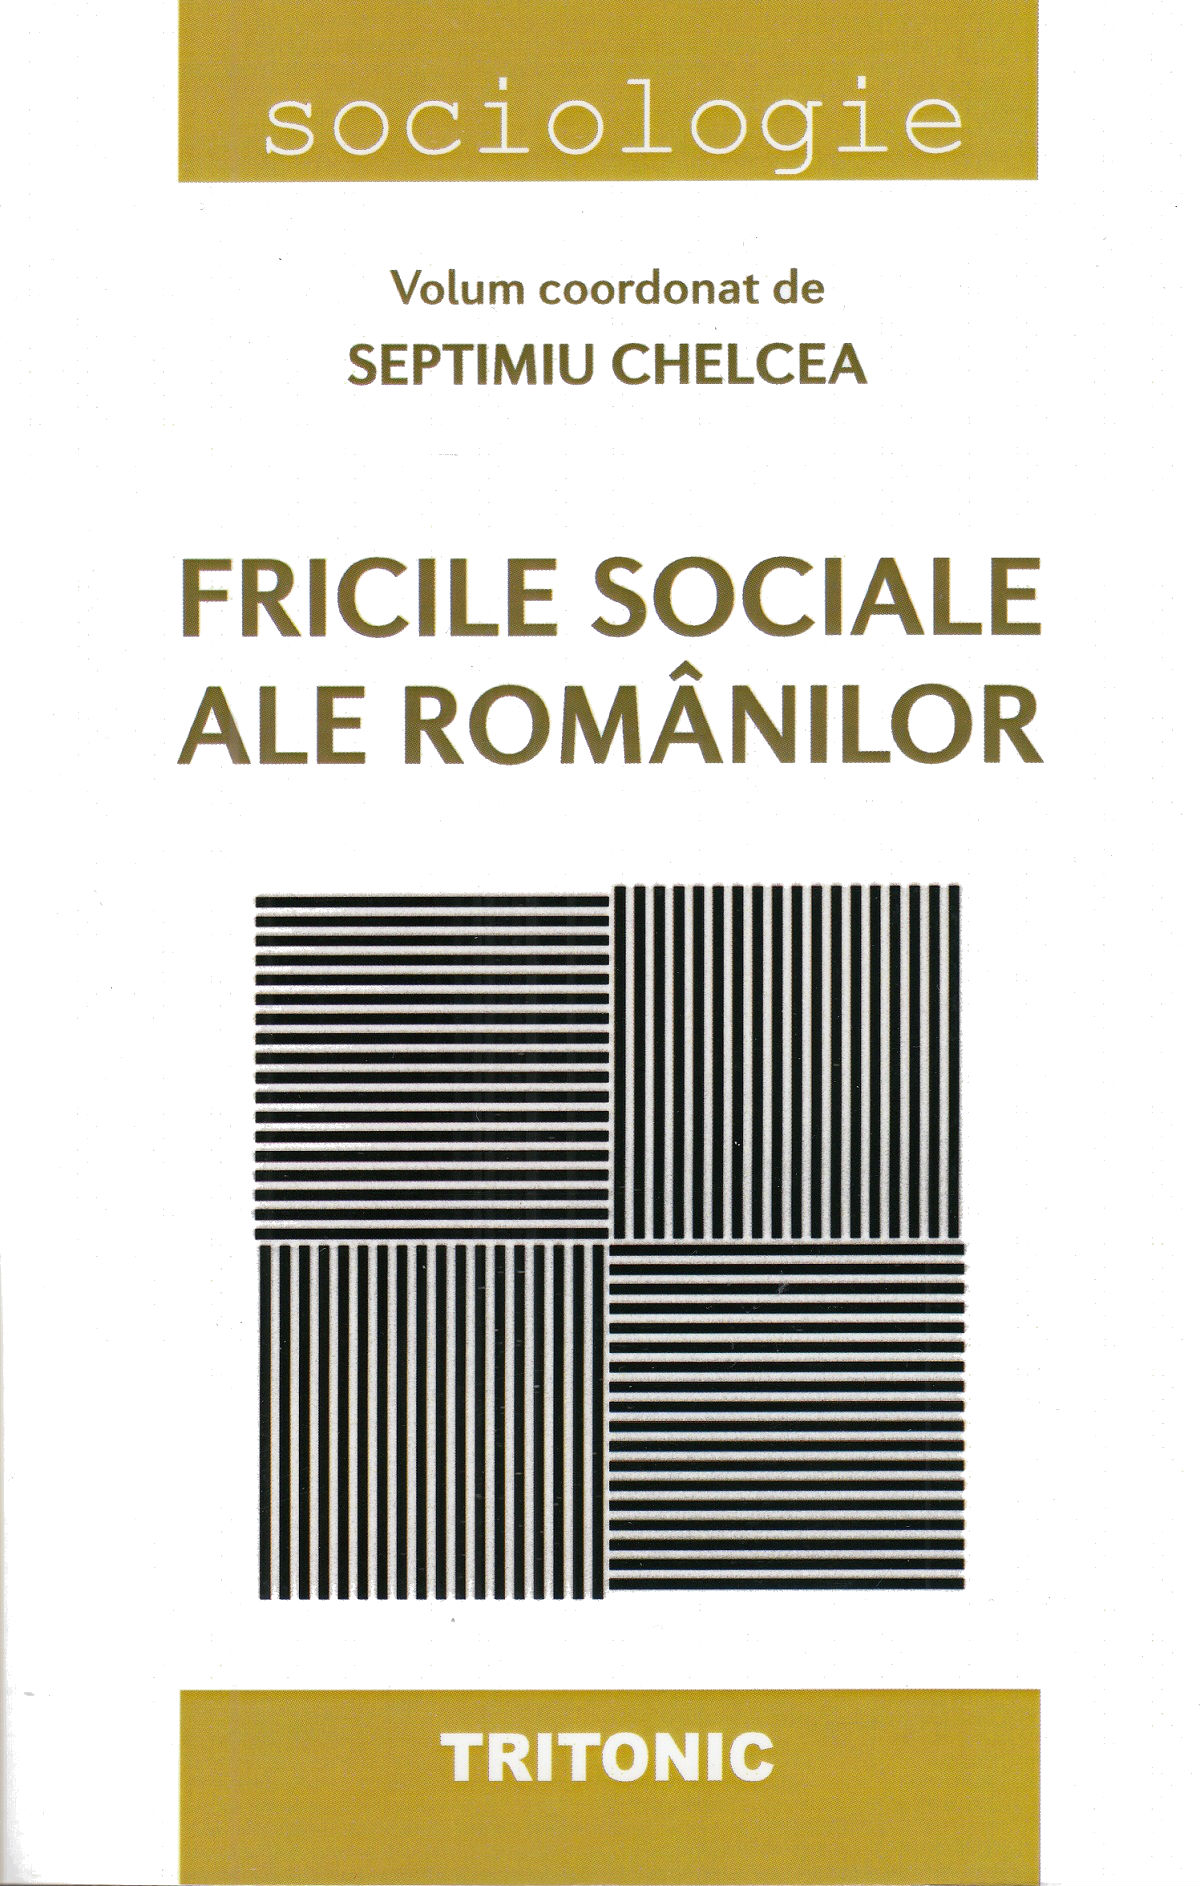 Fricile sociale ale romanilor - Septimiu Chelcea